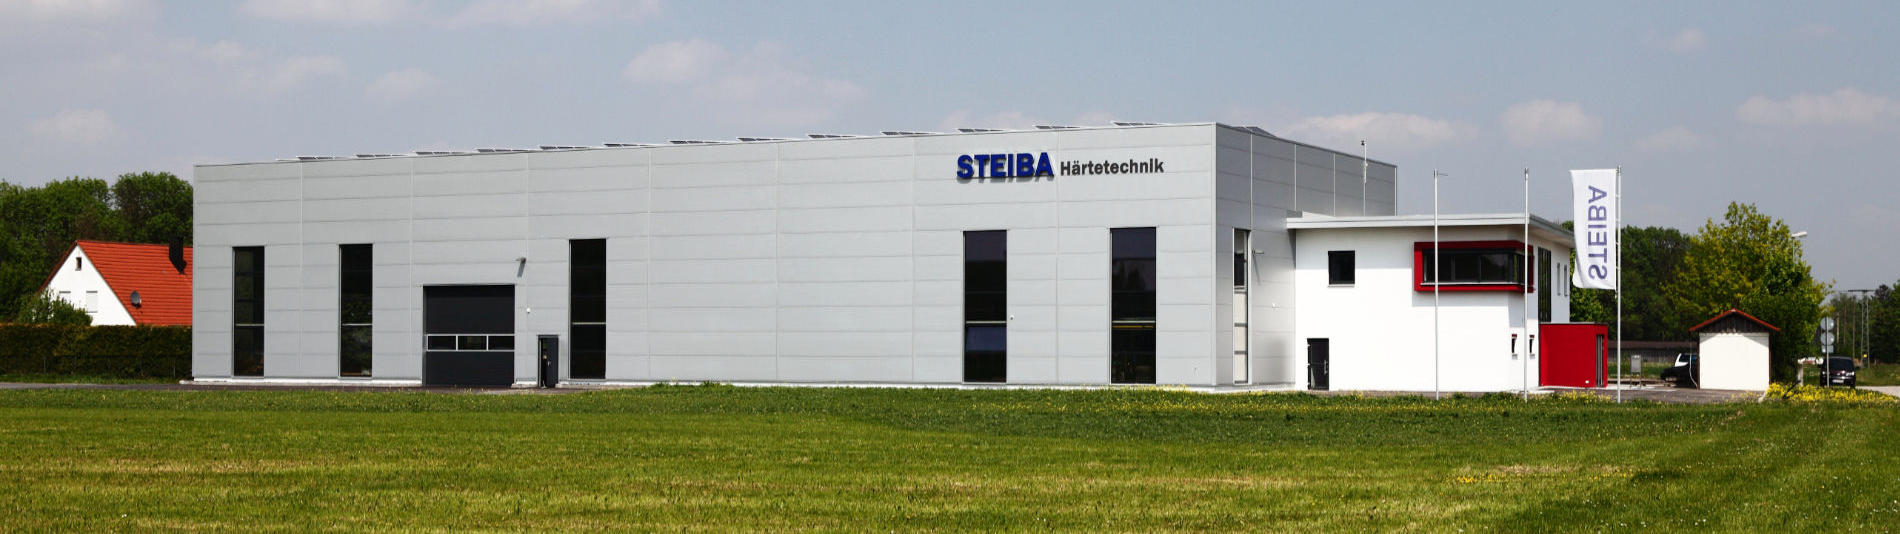 Firmengände STEIBA Härtetechnik GmbH